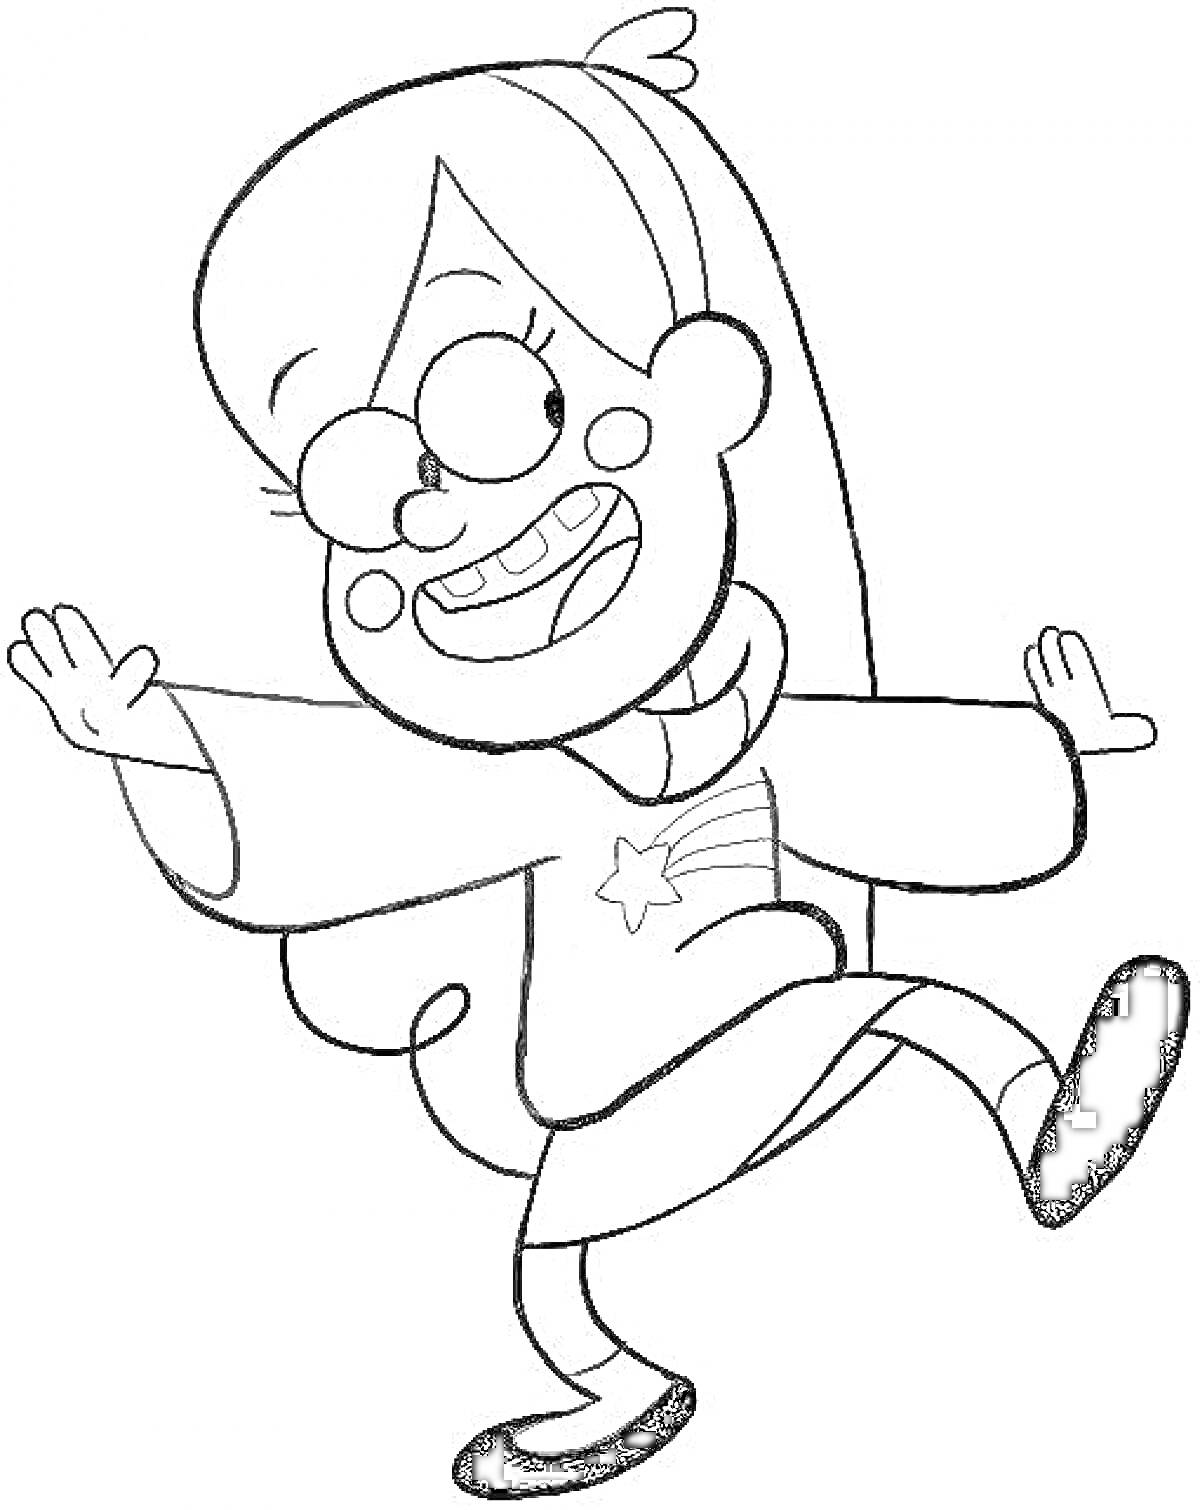 Раскраска Девочка с длинными волосами, в очках, в полосатом свитере с изображением звезды, машет руками и одной ногой делает шаг вперед